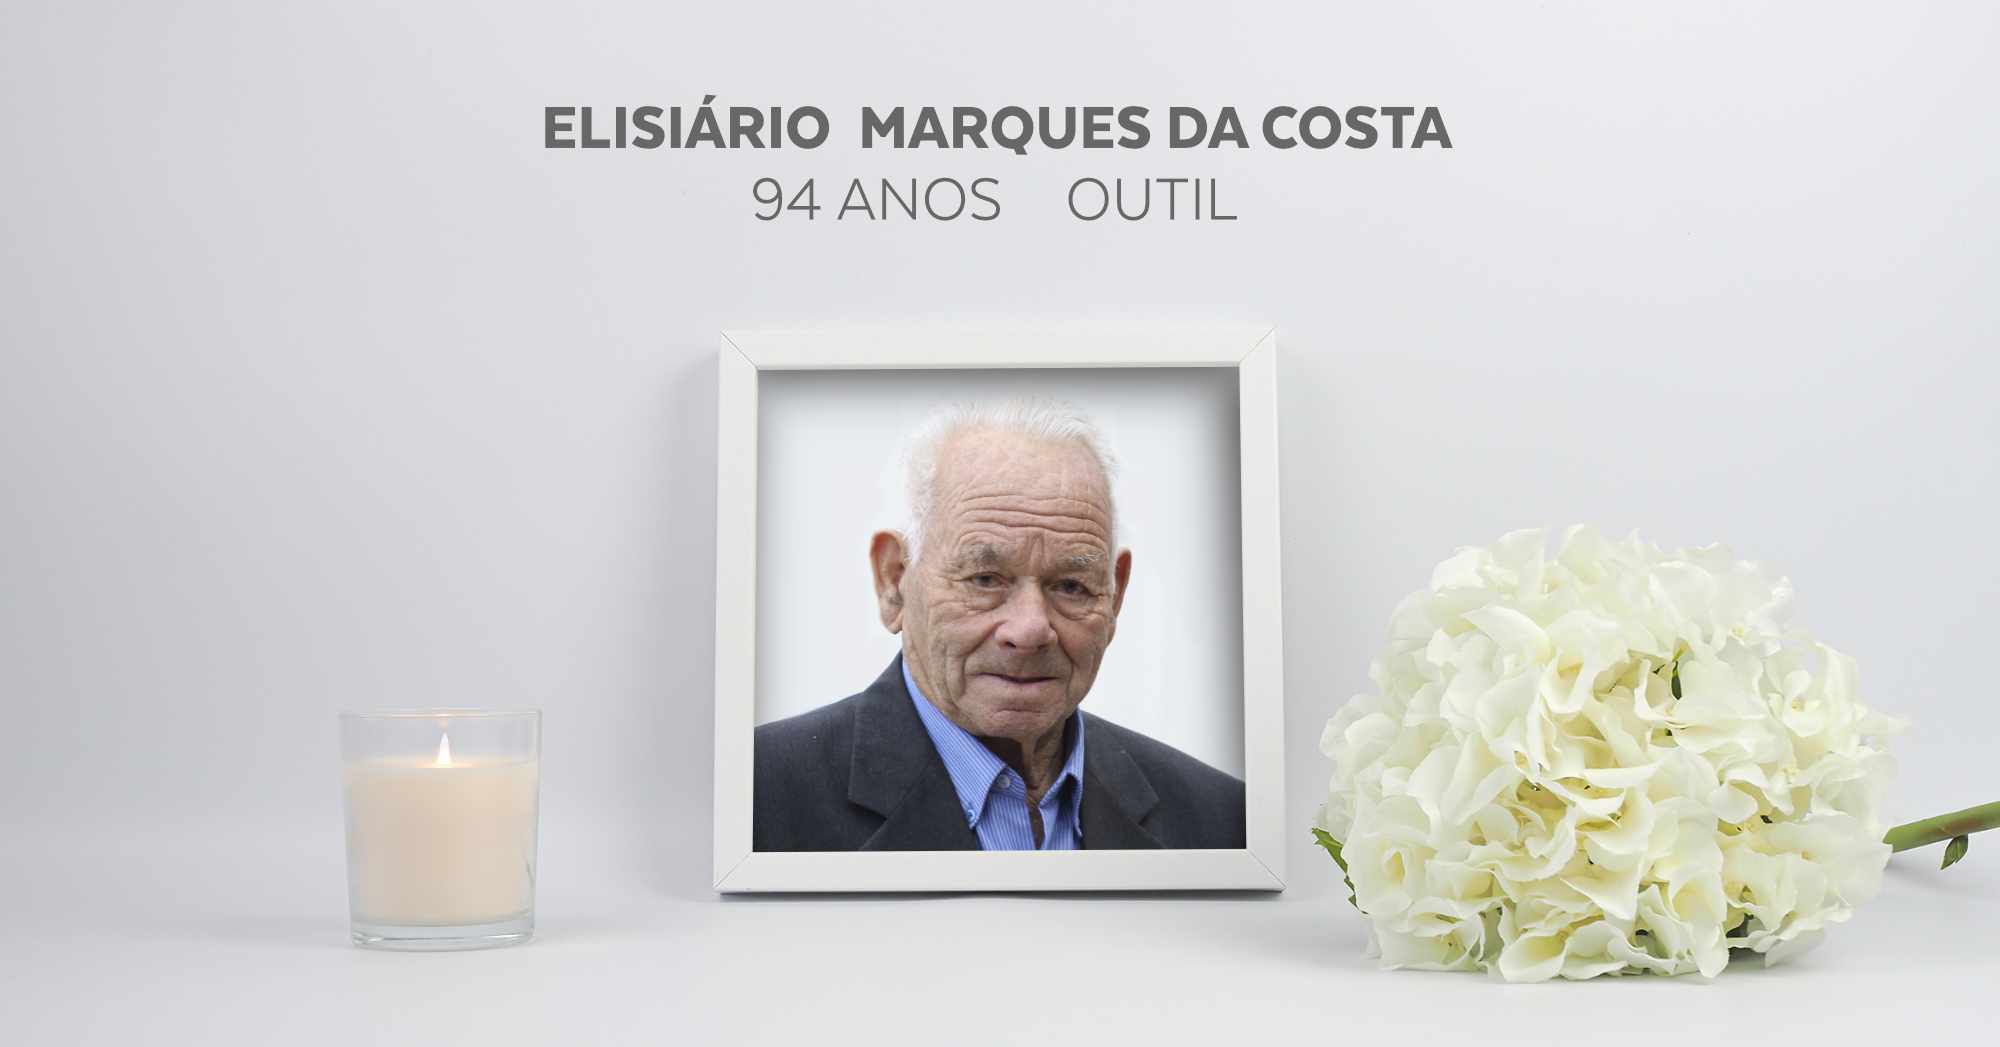 Elisiário Marques da Costa